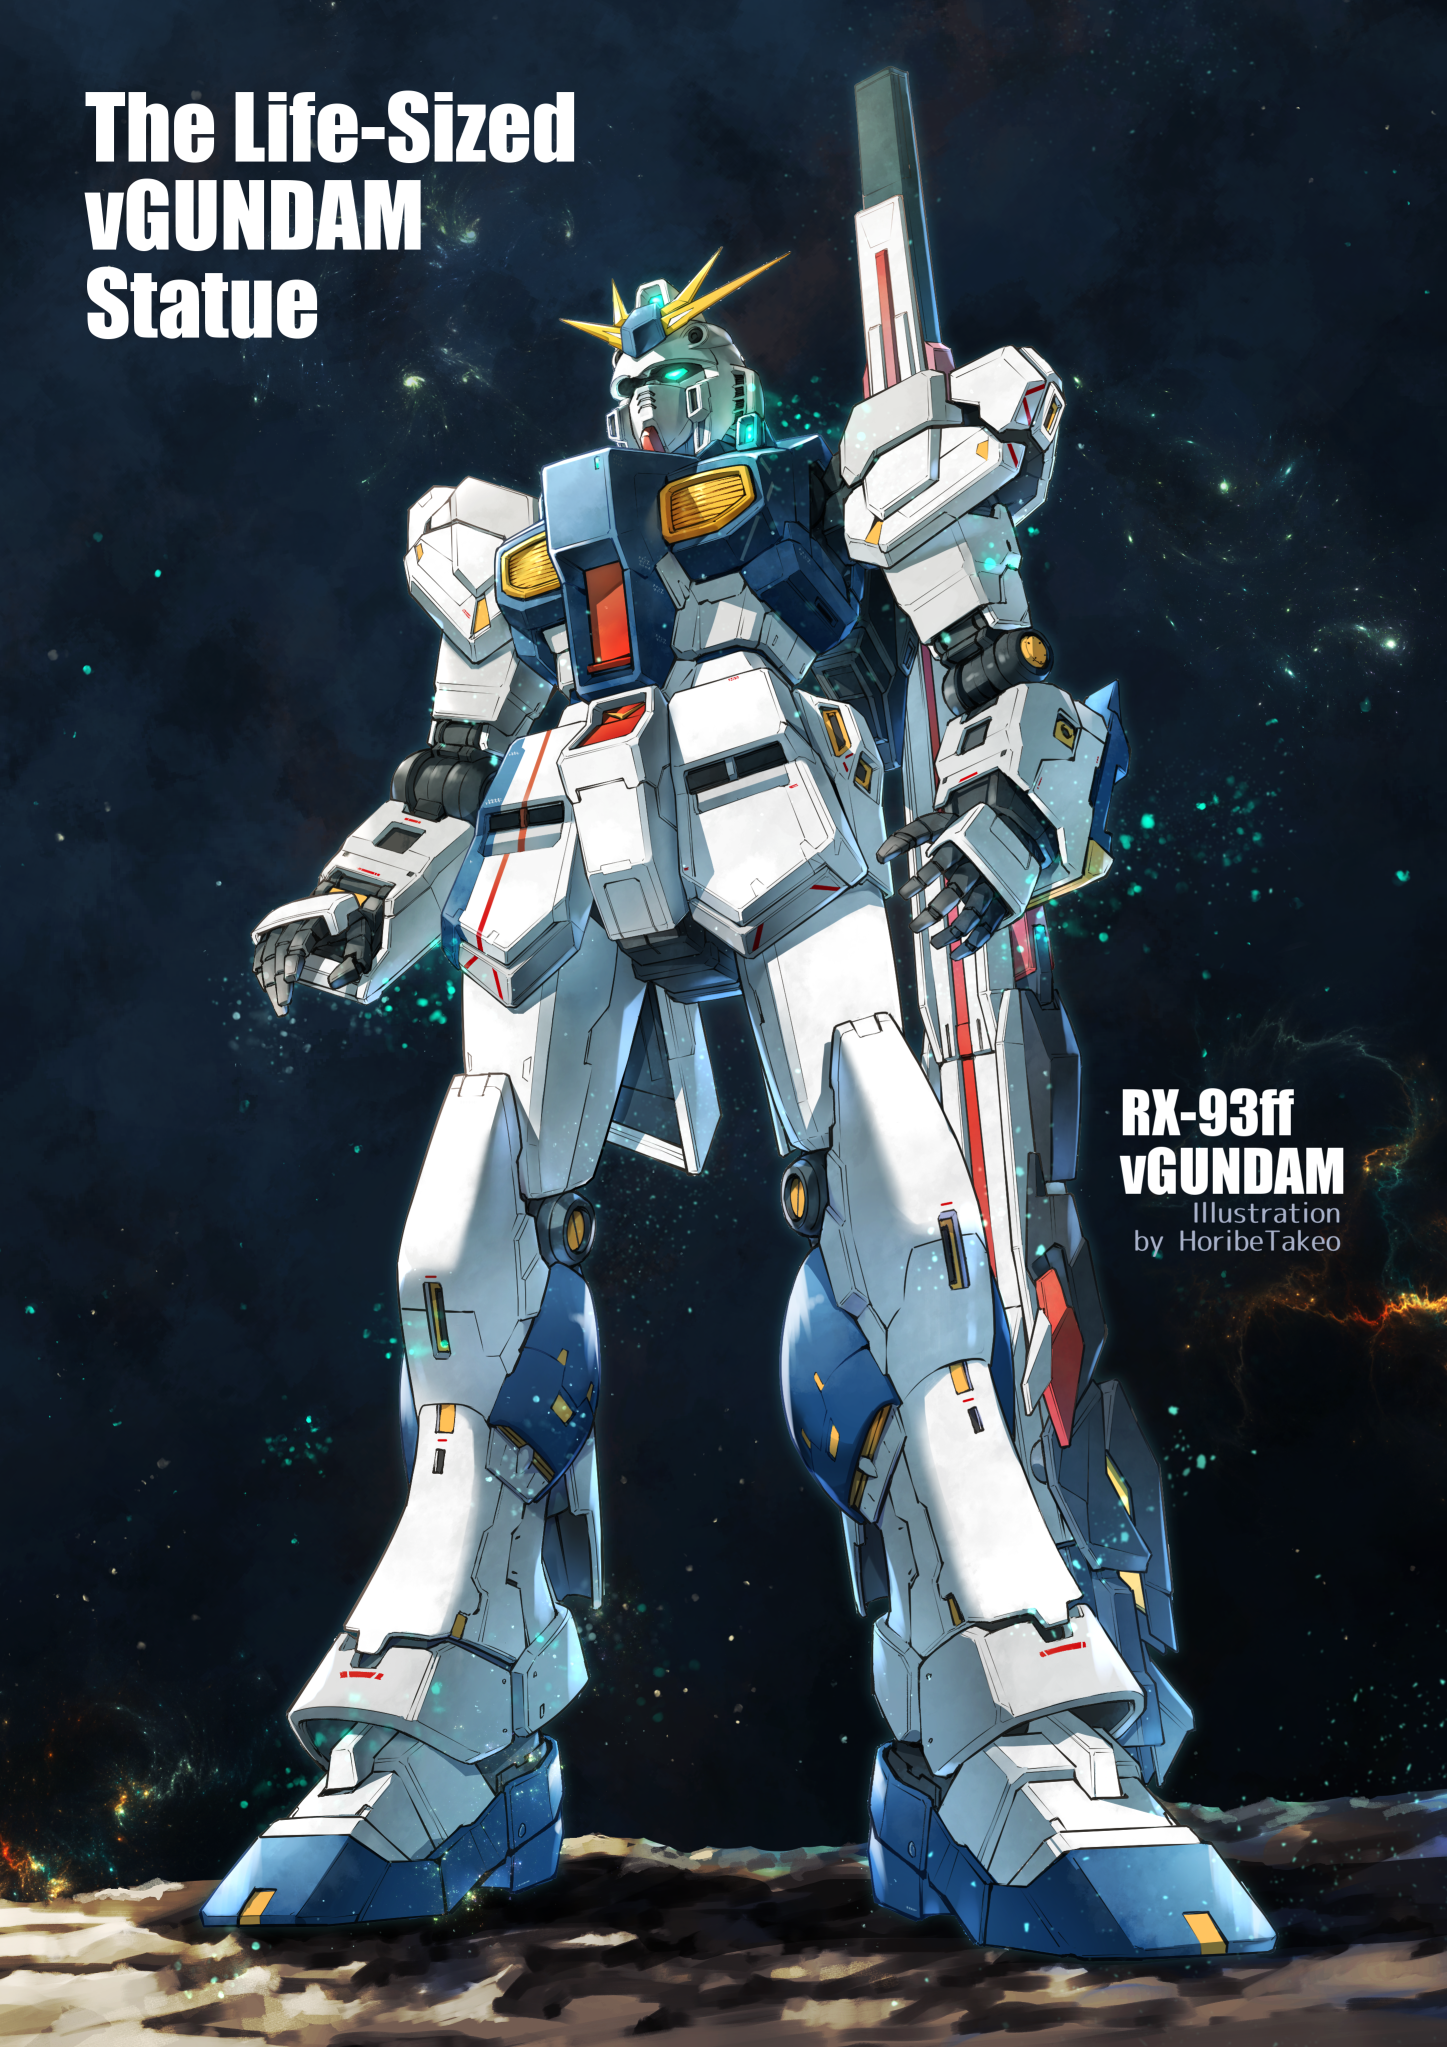 Anime 1447x2047 RX-93ff ν Gundam Mobile Suit Gundam Char&#039;s Counterattack Gundam Super Robot Taisen mechs anime artwork digital art fan art